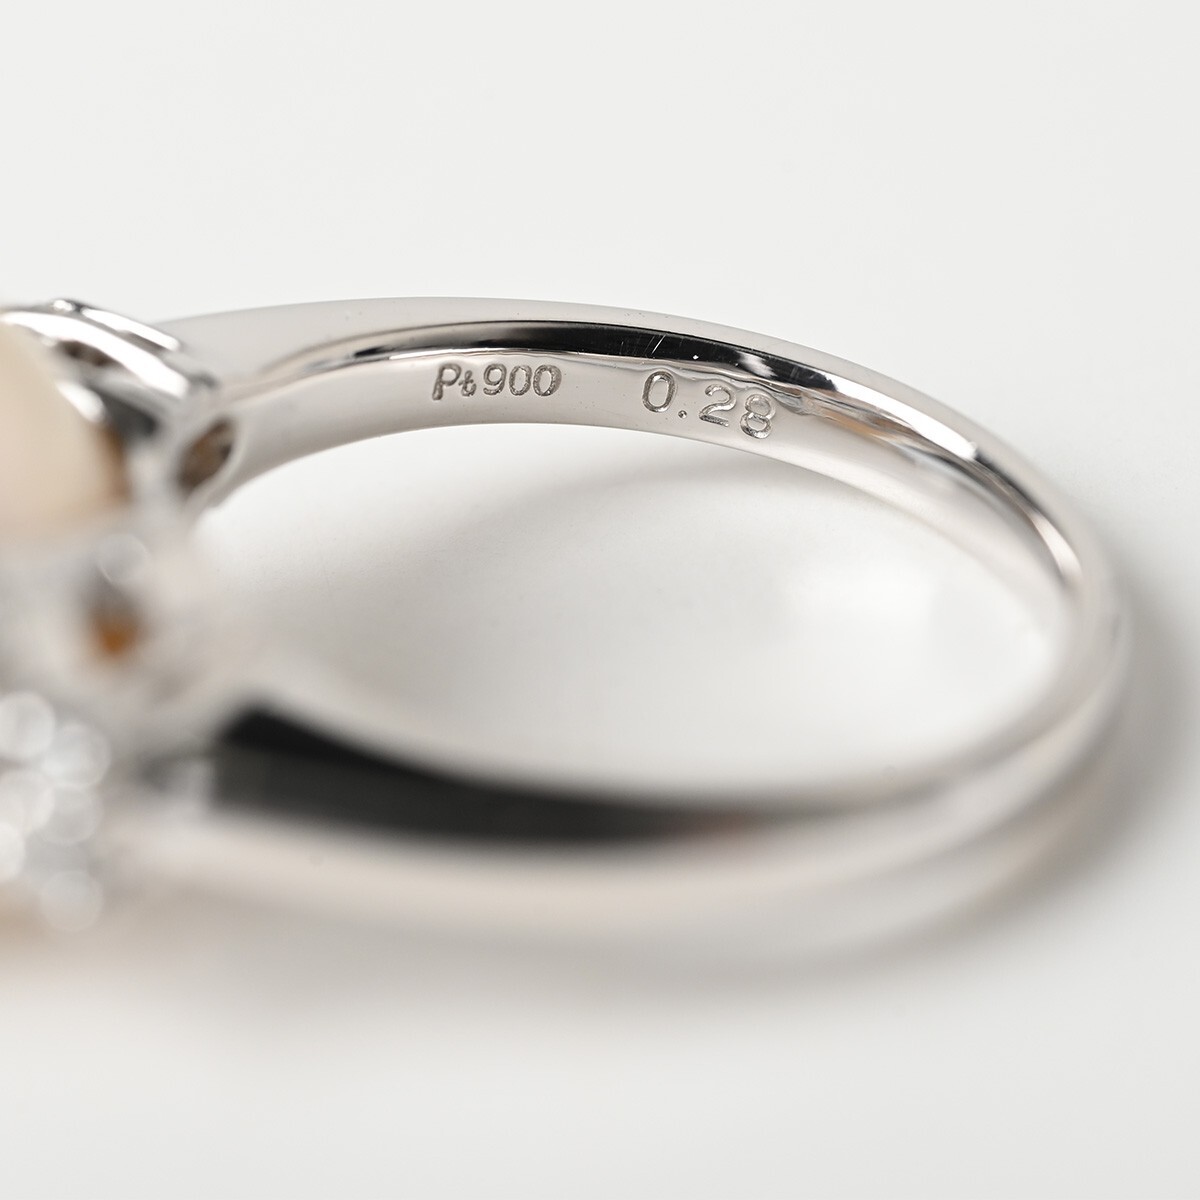 天然真珠 ダイヤモンド 0.28ct Pt900 総重量約8.9g 指輪 11.5号 パール プラチナ 骨董 古美術 ジュエリー アンティークの画像8